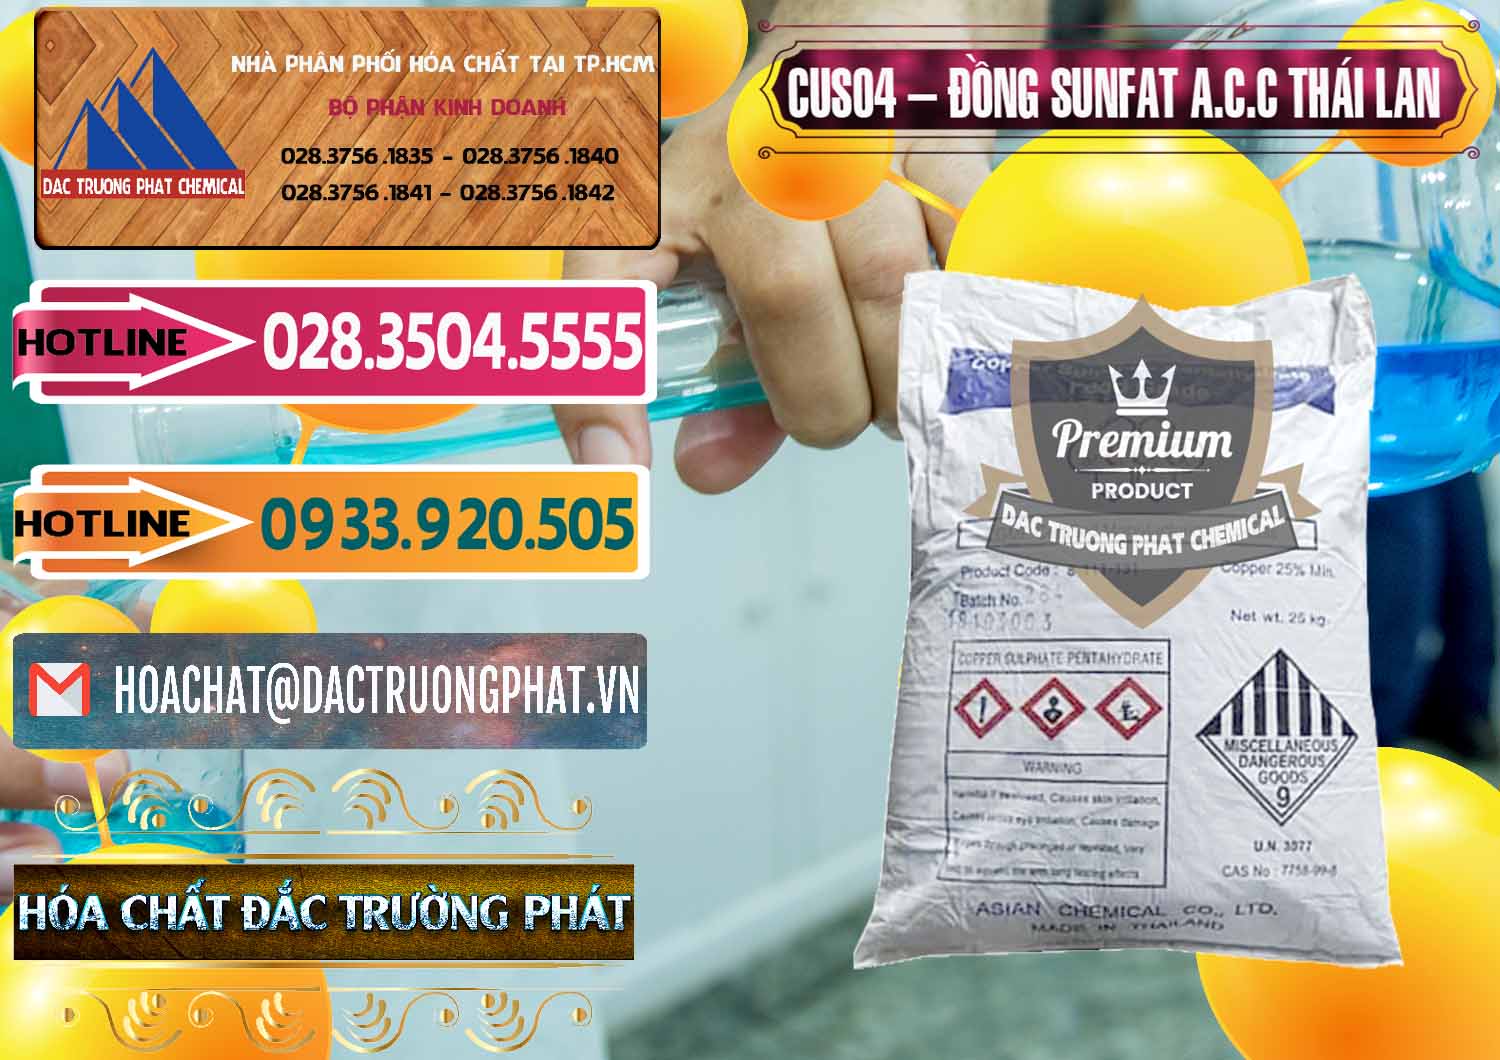 Chuyên cung cấp và bán CuSO4 – Đồng Sunfat A.C.C Thái Lan - 0249 - Nhà cung cấp _ bán hóa chất tại TP.HCM - dactruongphat.vn